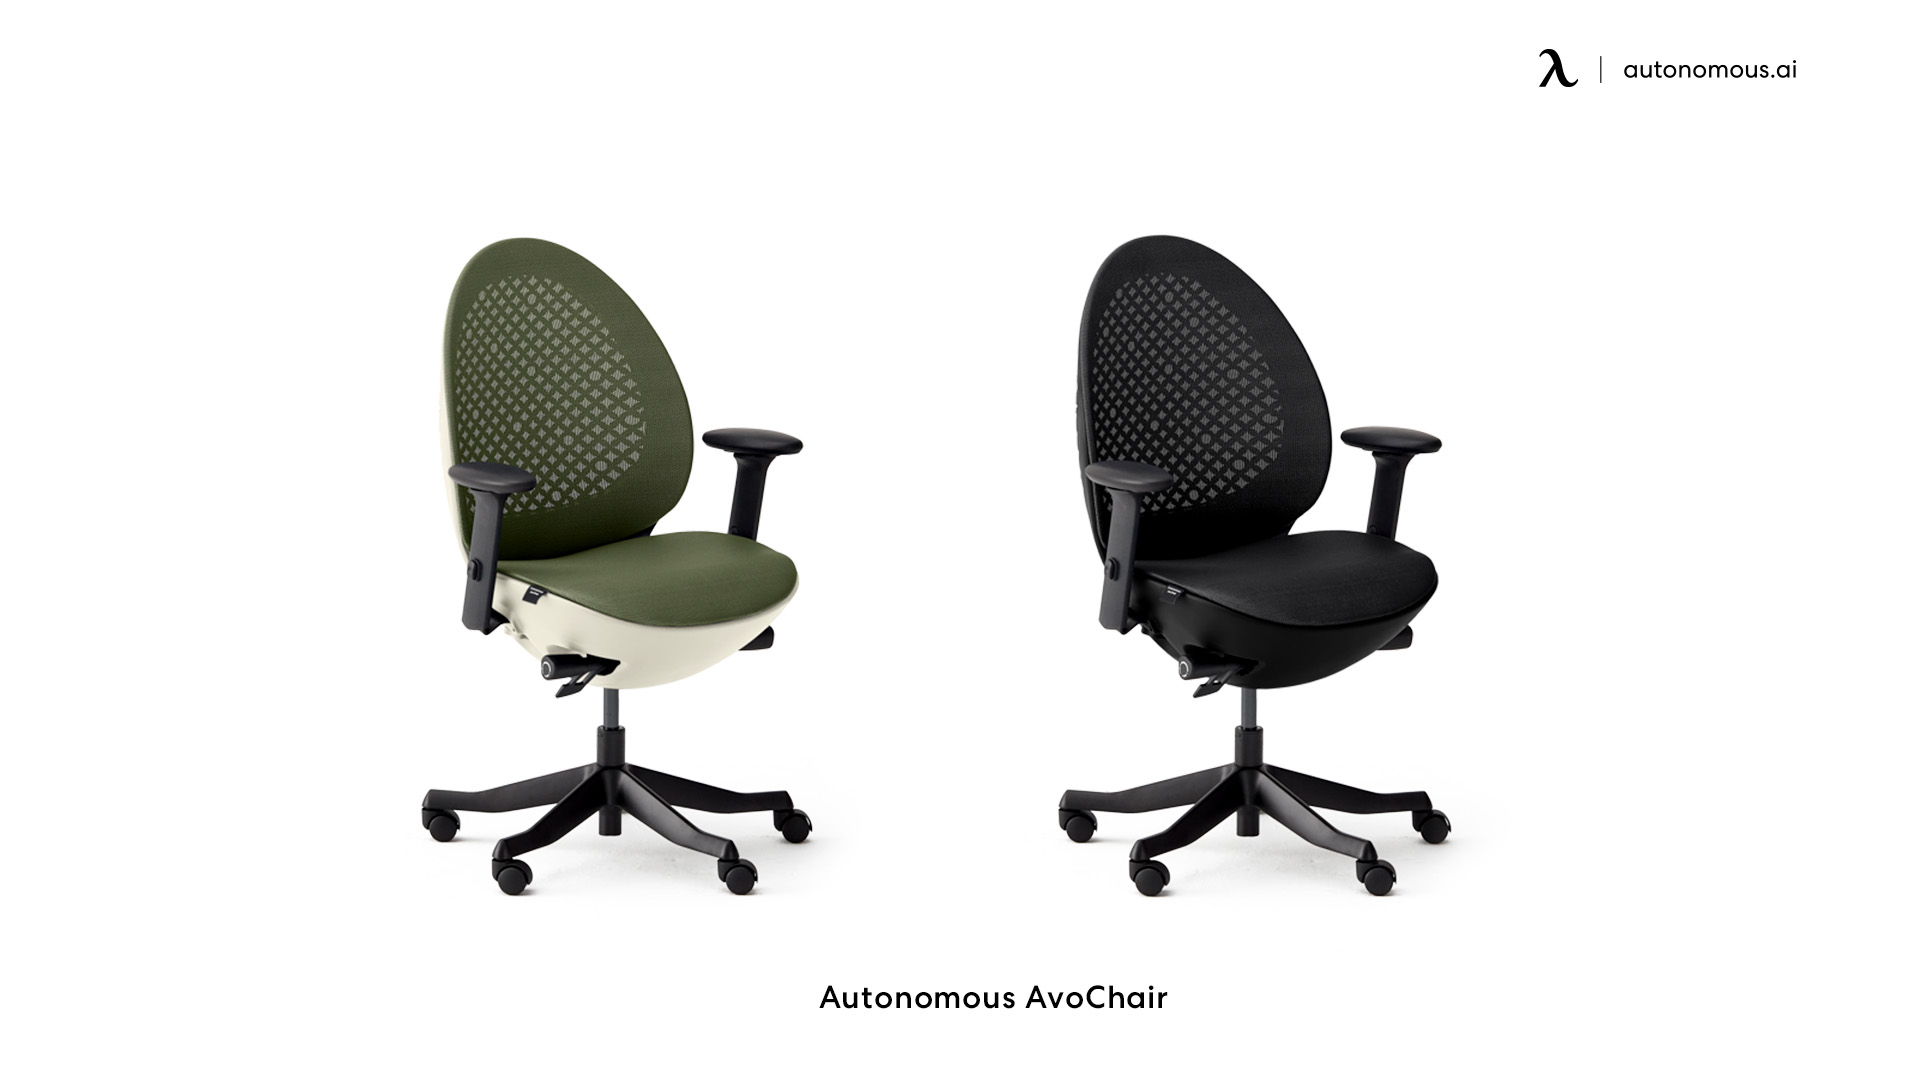 Autonomous AvoChair small home office chair